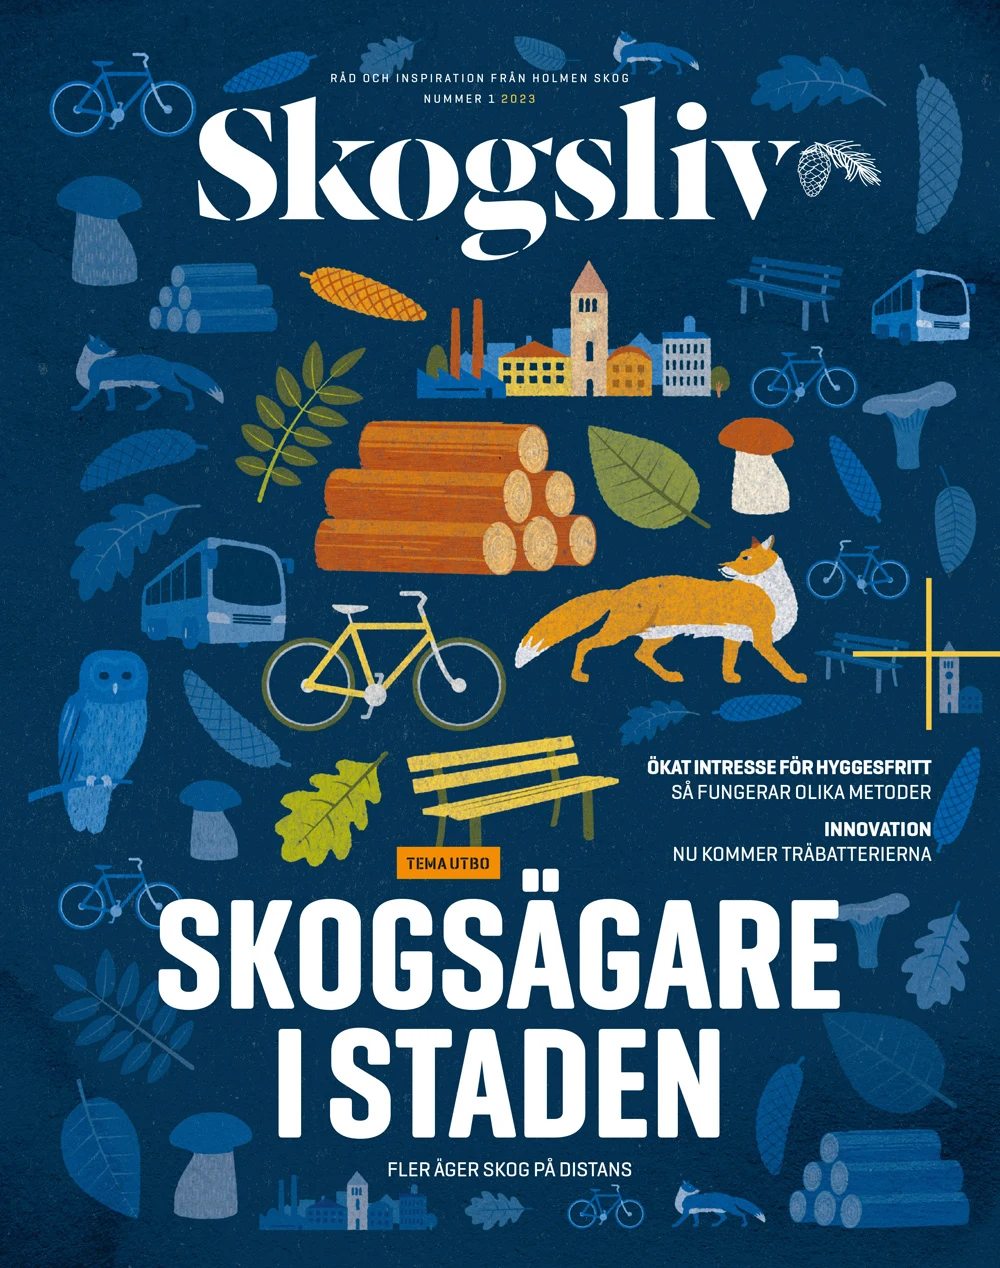 Illustrerat omslag av magasinet Skogsliv. Blå bakgrund med illustrationer av bl.a. en räv, cykel, parkbänk, löv, stadssiluett, svamp.